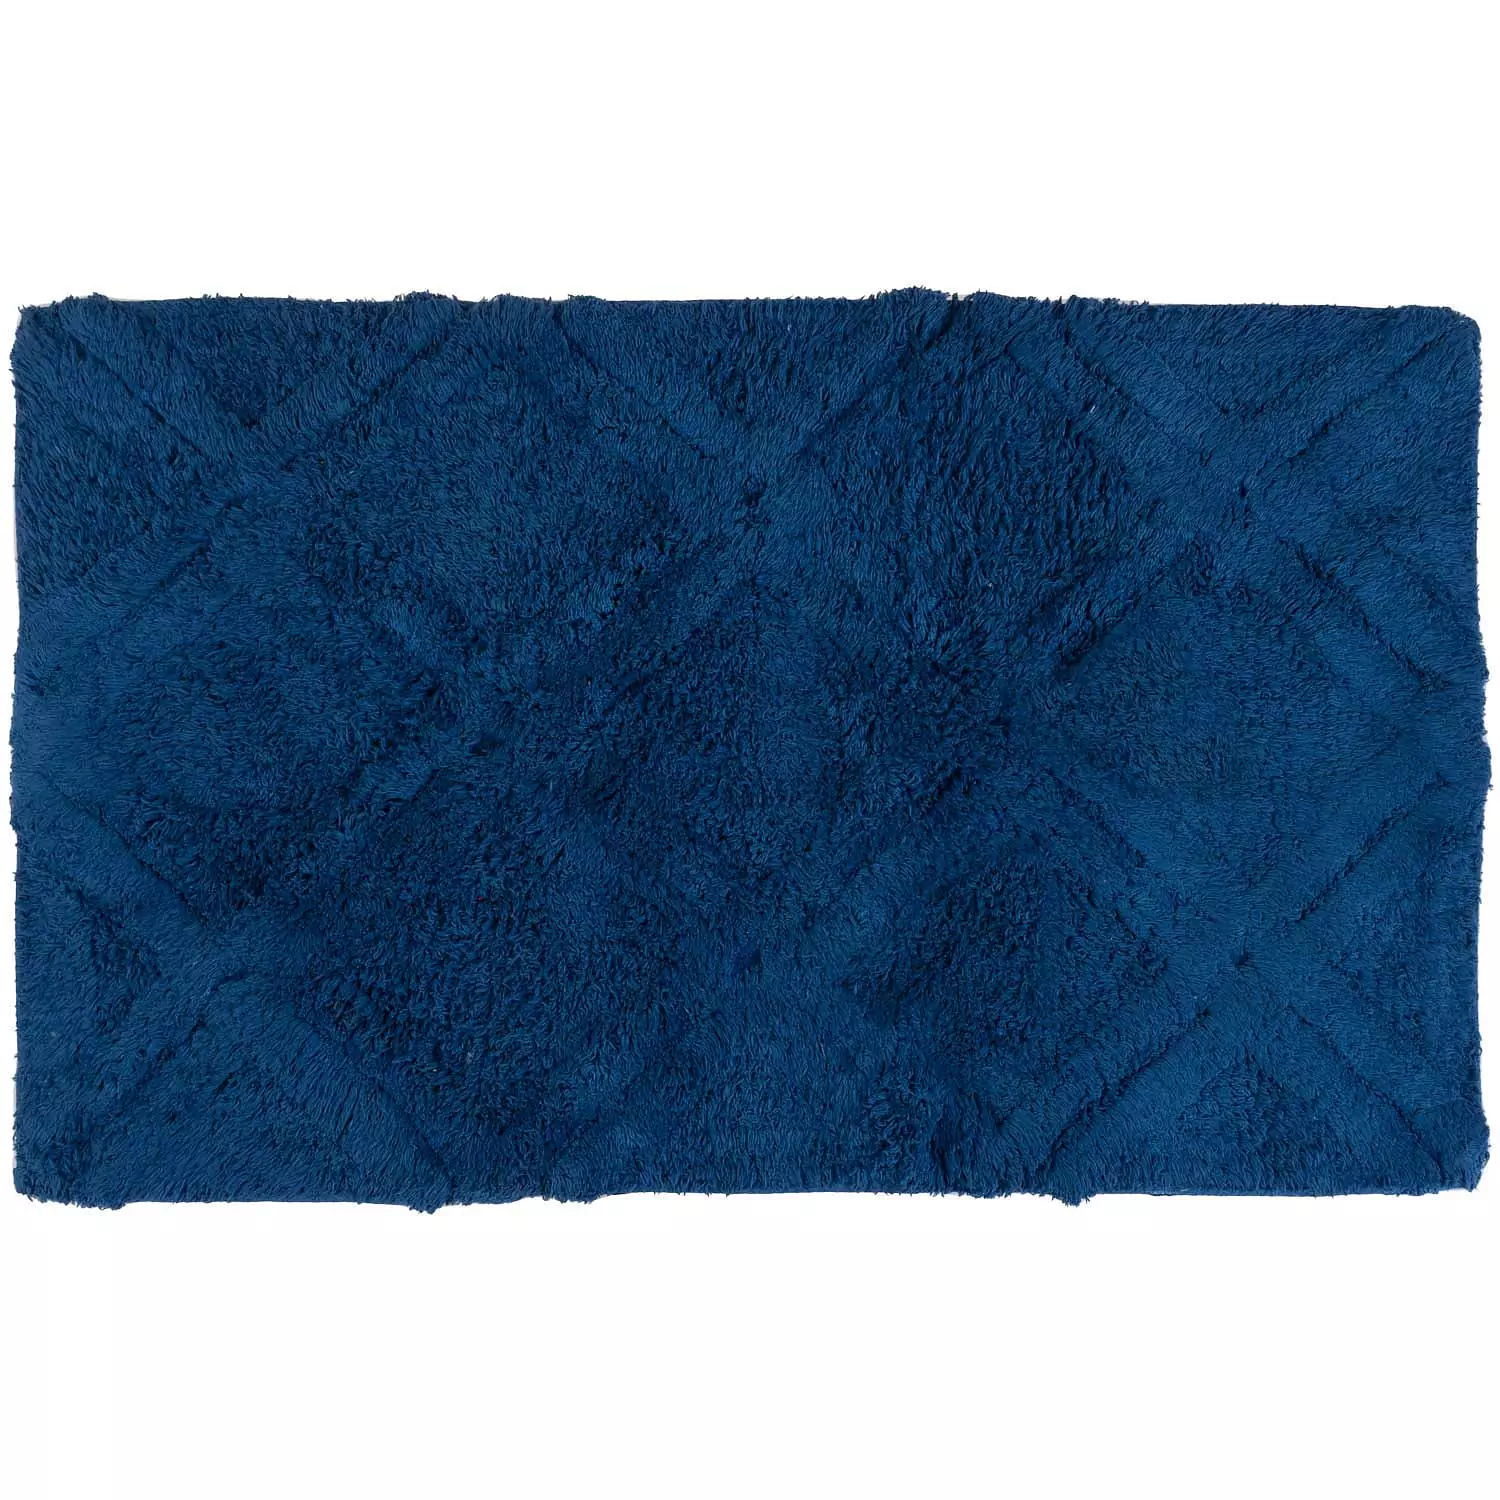 Zen - Tapis de bain, motif diamant, 18" x 30", bleu